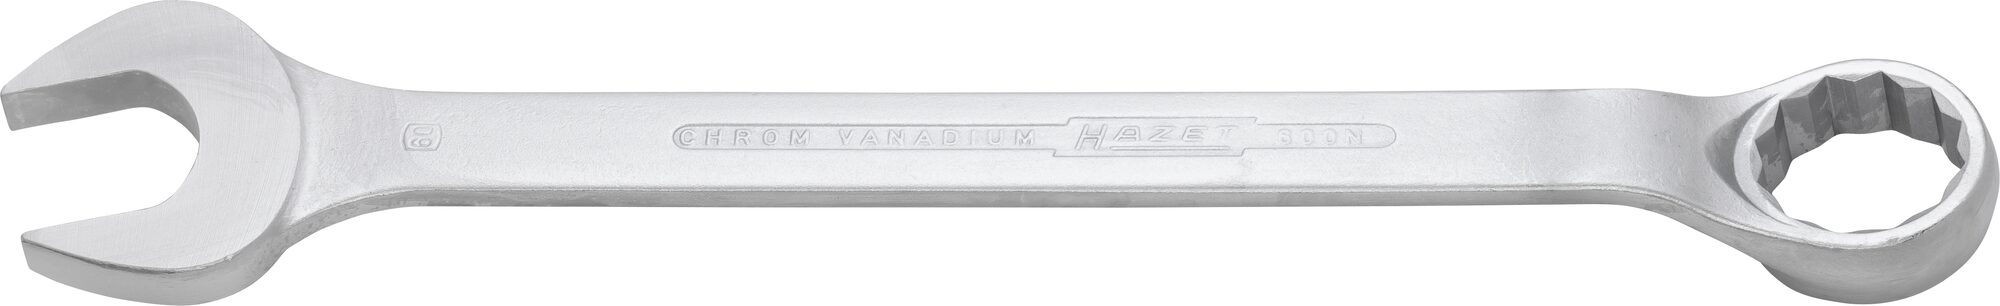 HAZET Ring-Maulschlüssel 600N-60 · Außen Doppel-Sechskant Profil · 60 mm